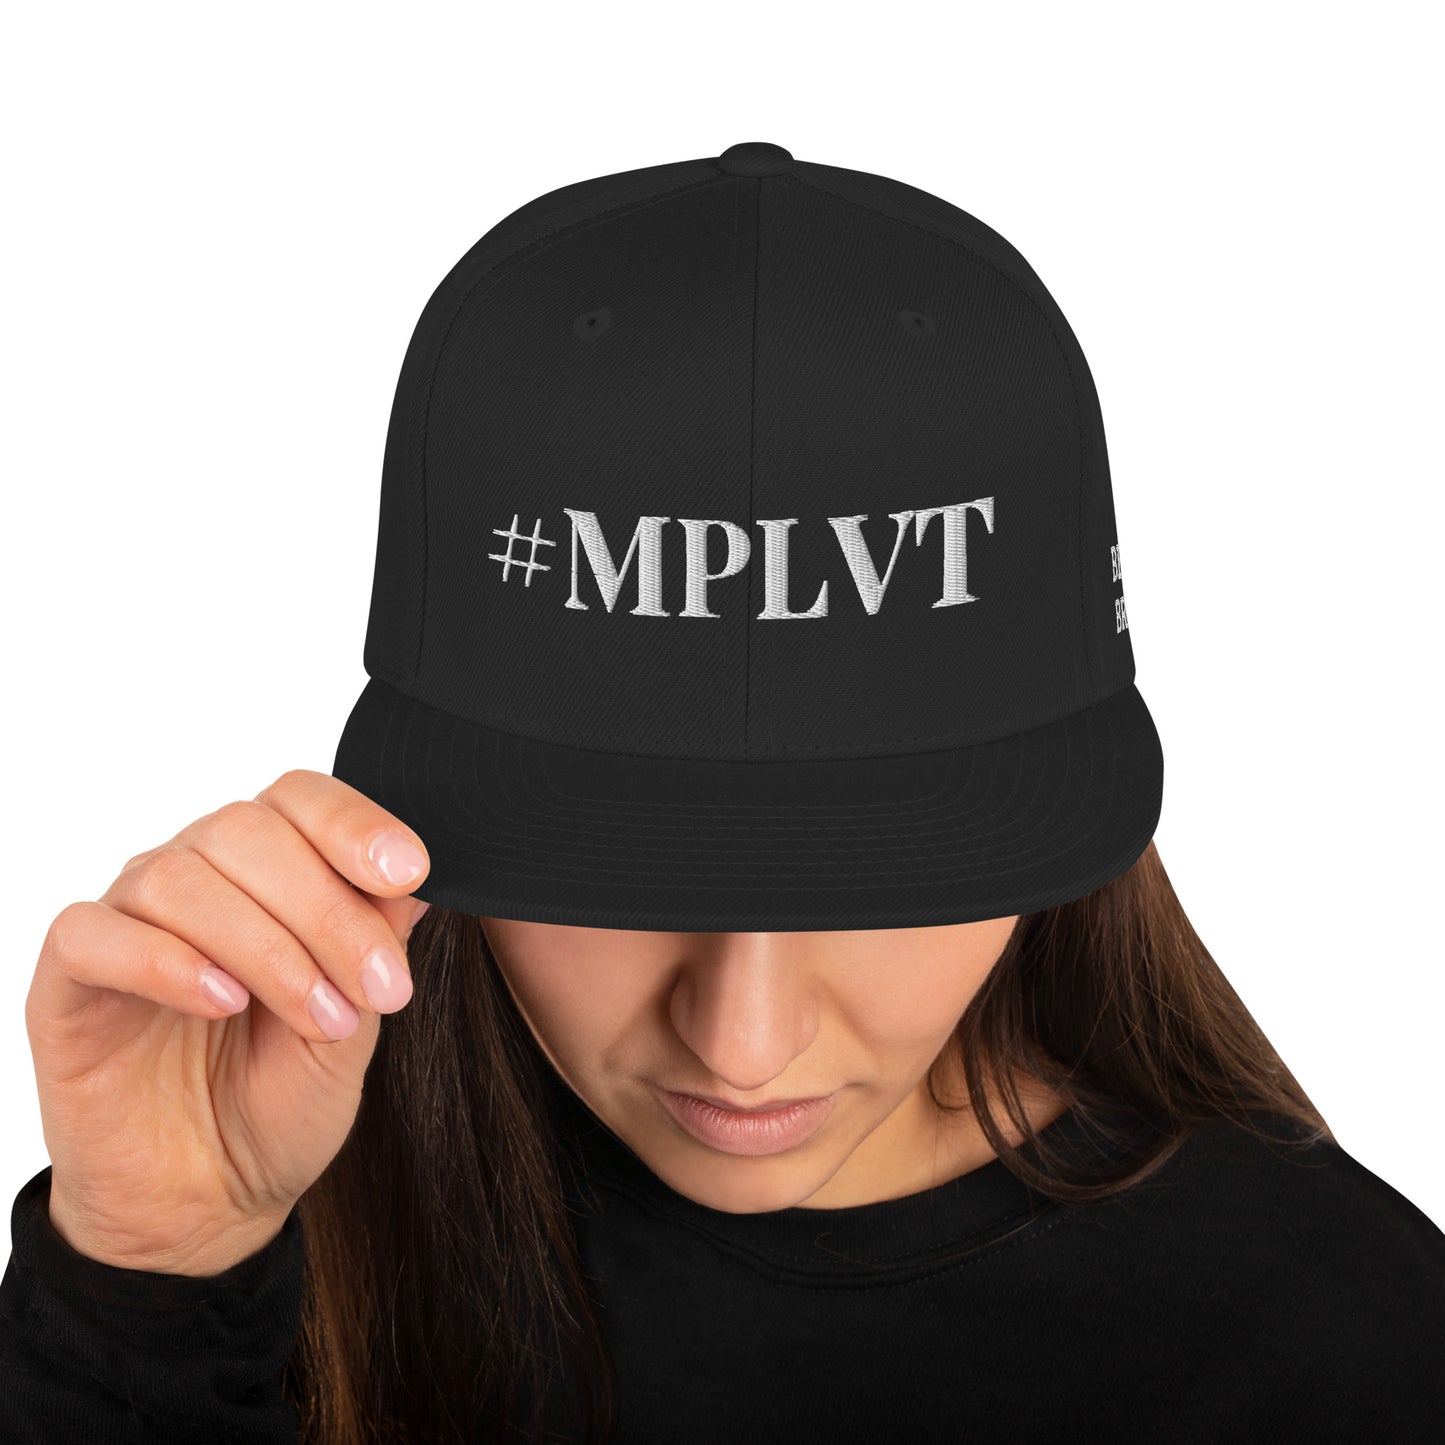 MPLVT hat